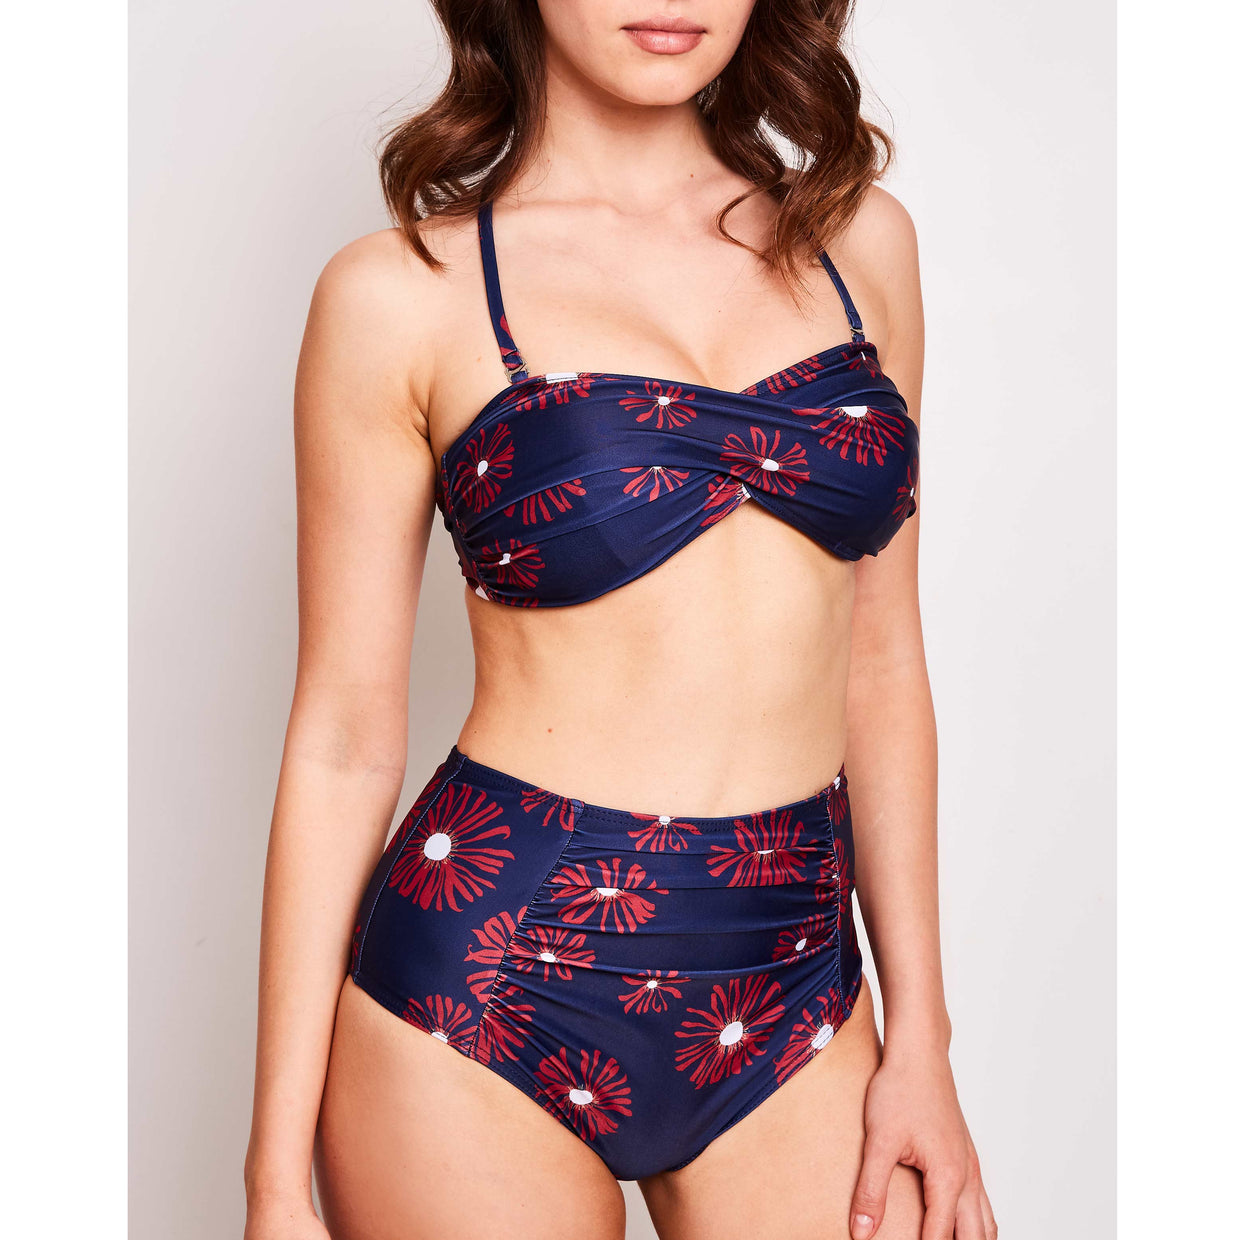 Erica-high-waisted-bikini-print-flowers-navy-2-contessa-volpi-swimwear